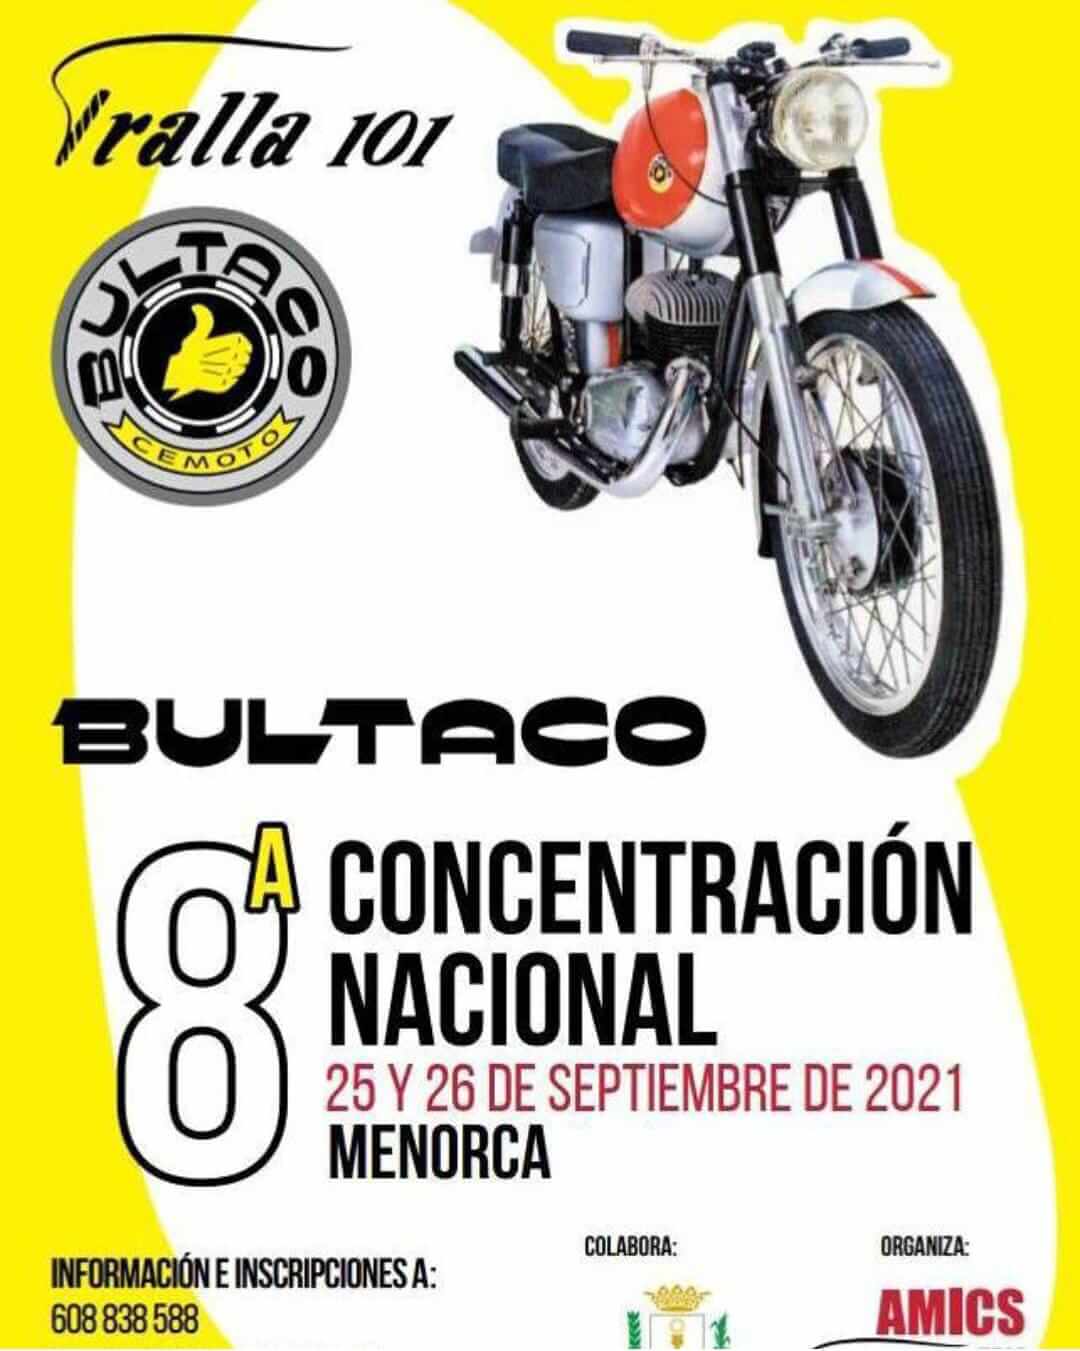 Concentración motos clásicas Bultaco en Menorca